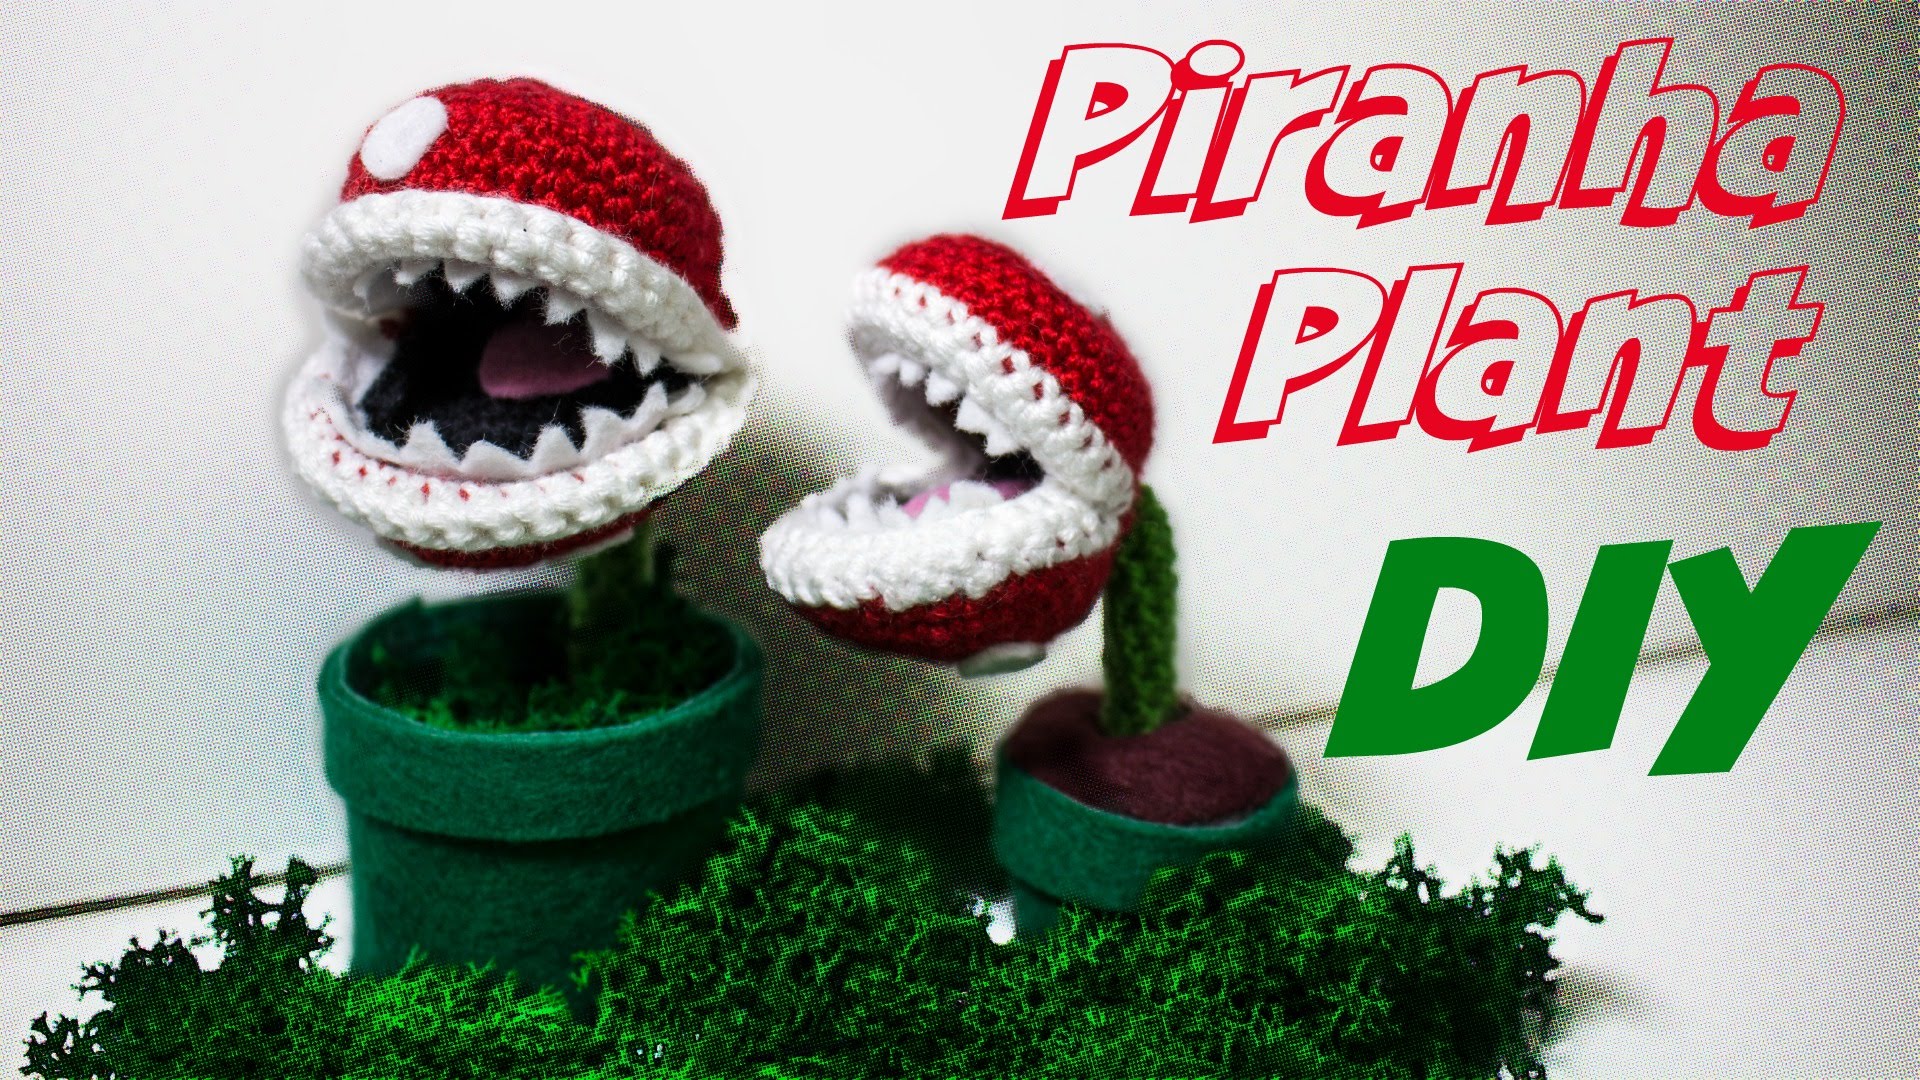 Piranha Pflanze (Super Mario) -  - Gratis-Anleitungen zum  Häkeln, Stricken, Nähen und mehr